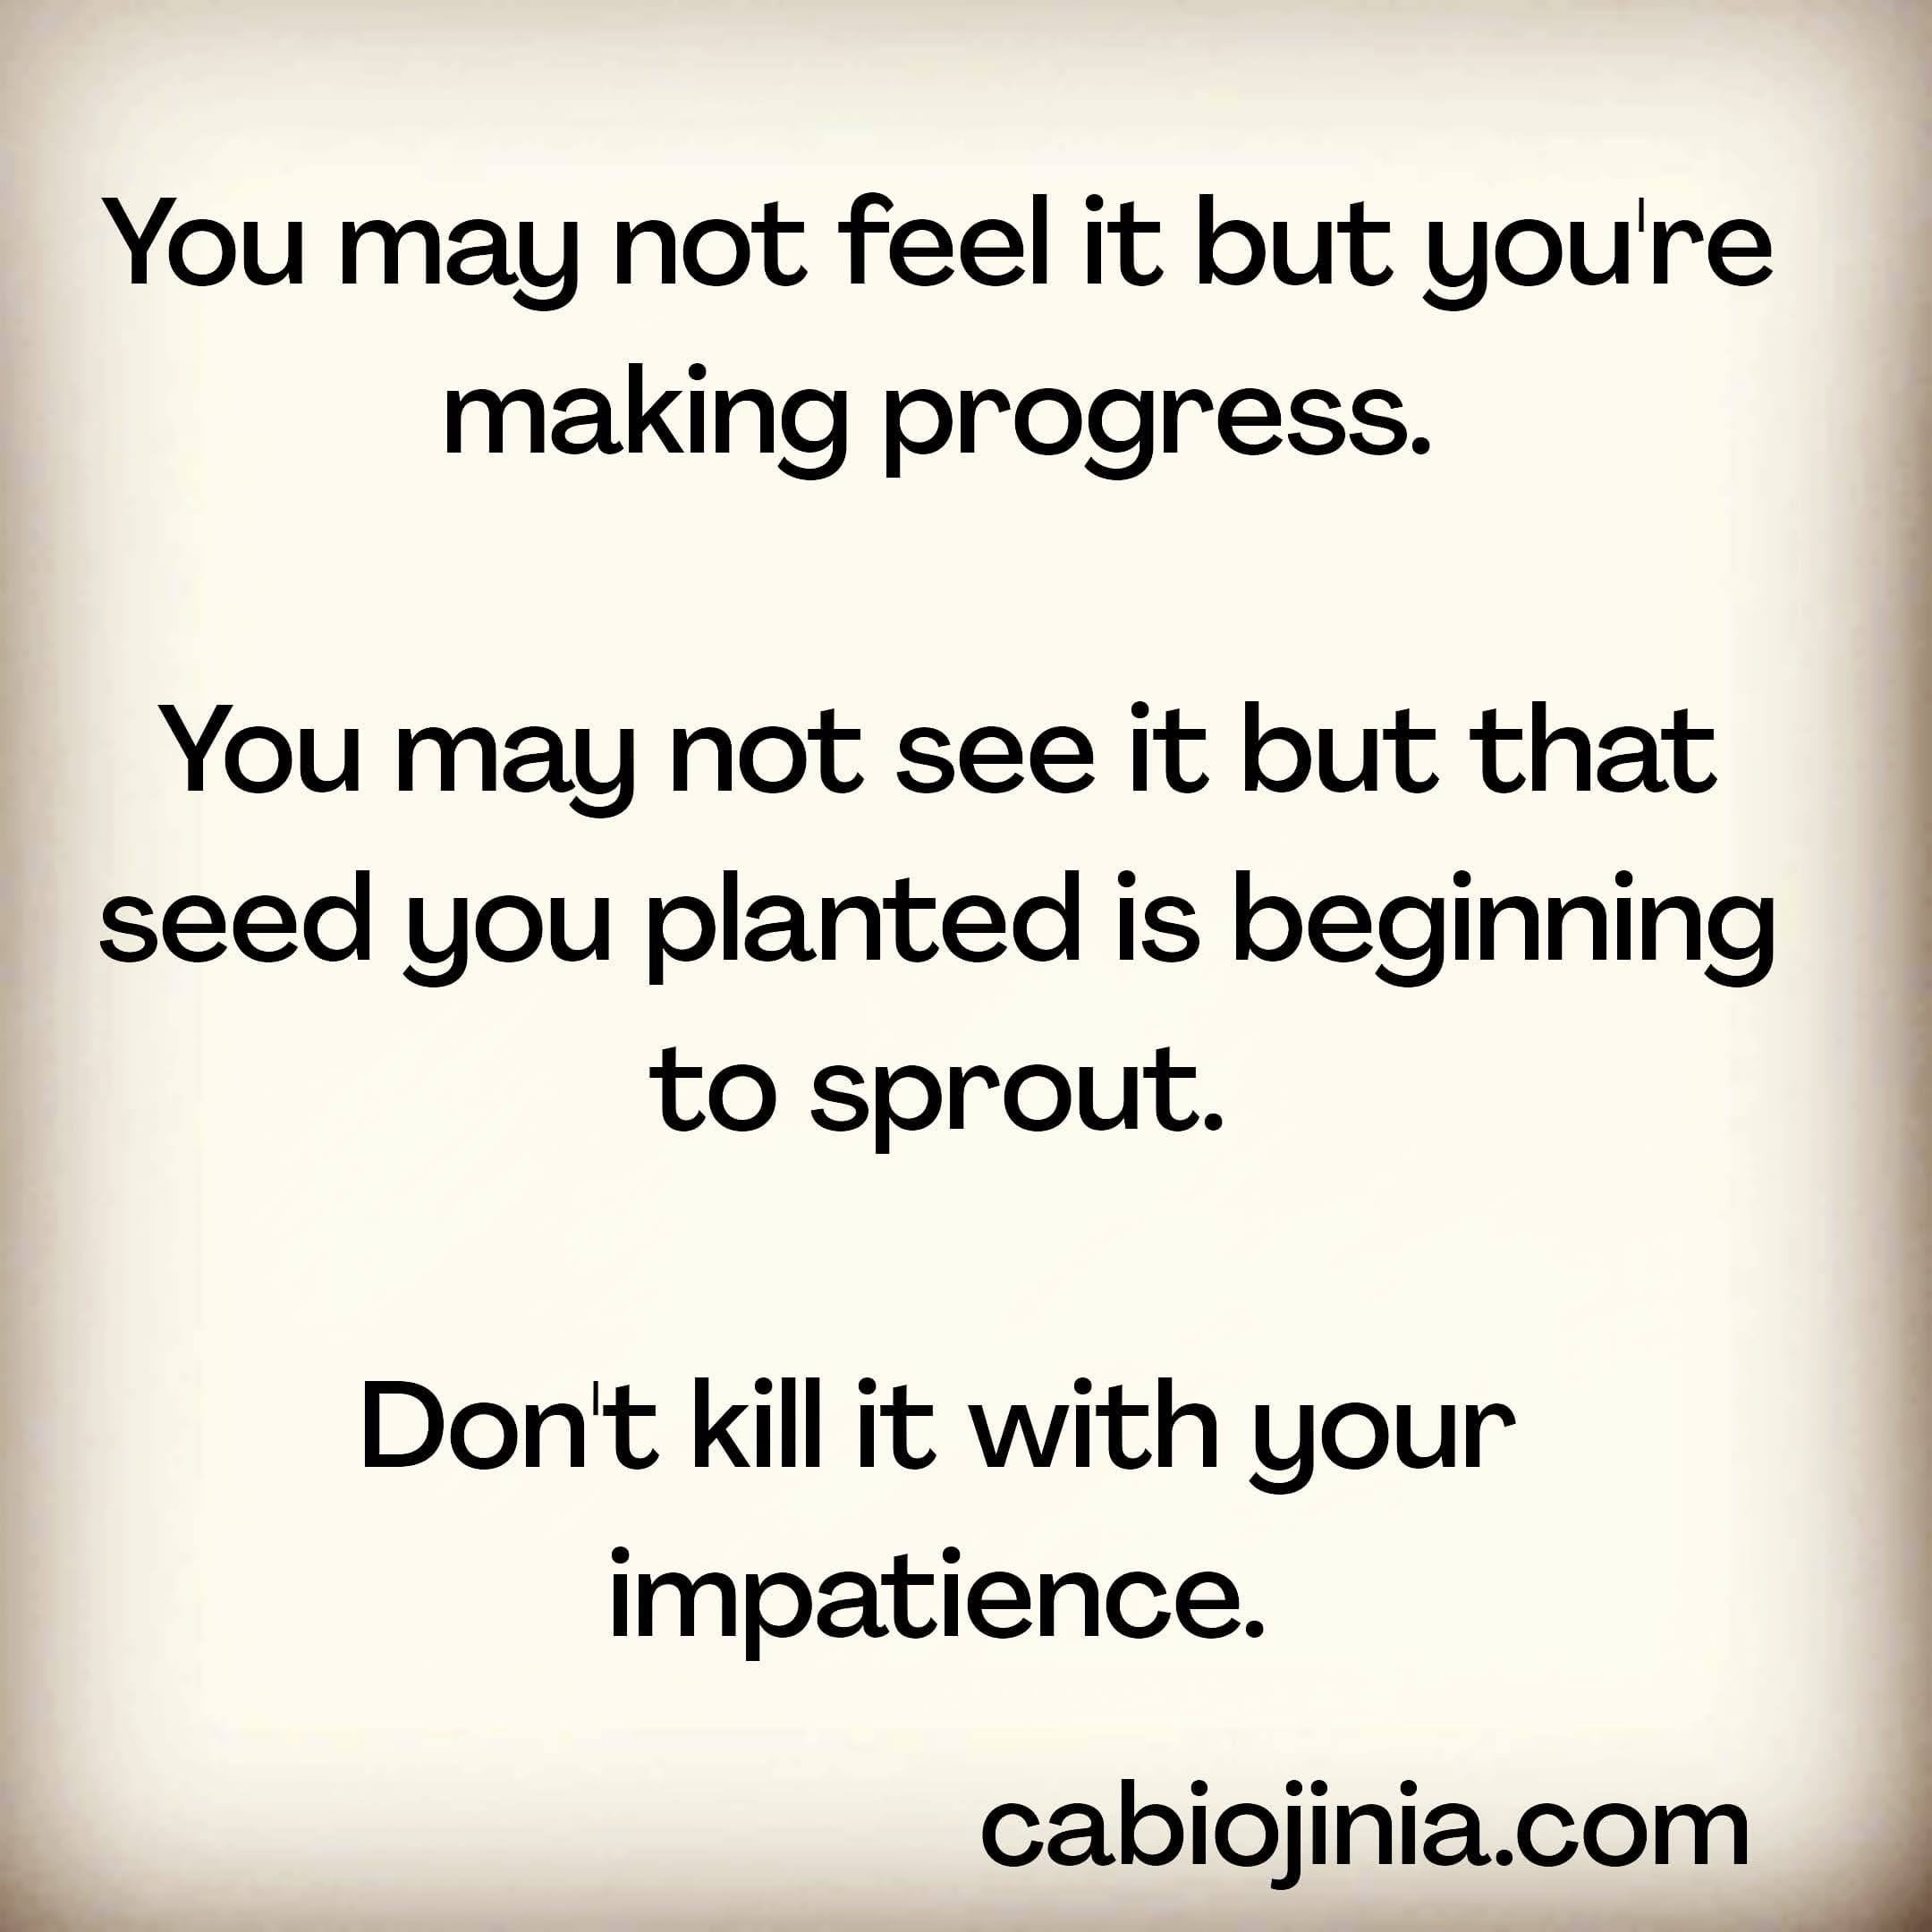 You may not feel it but you're making progress. Cabiojinia